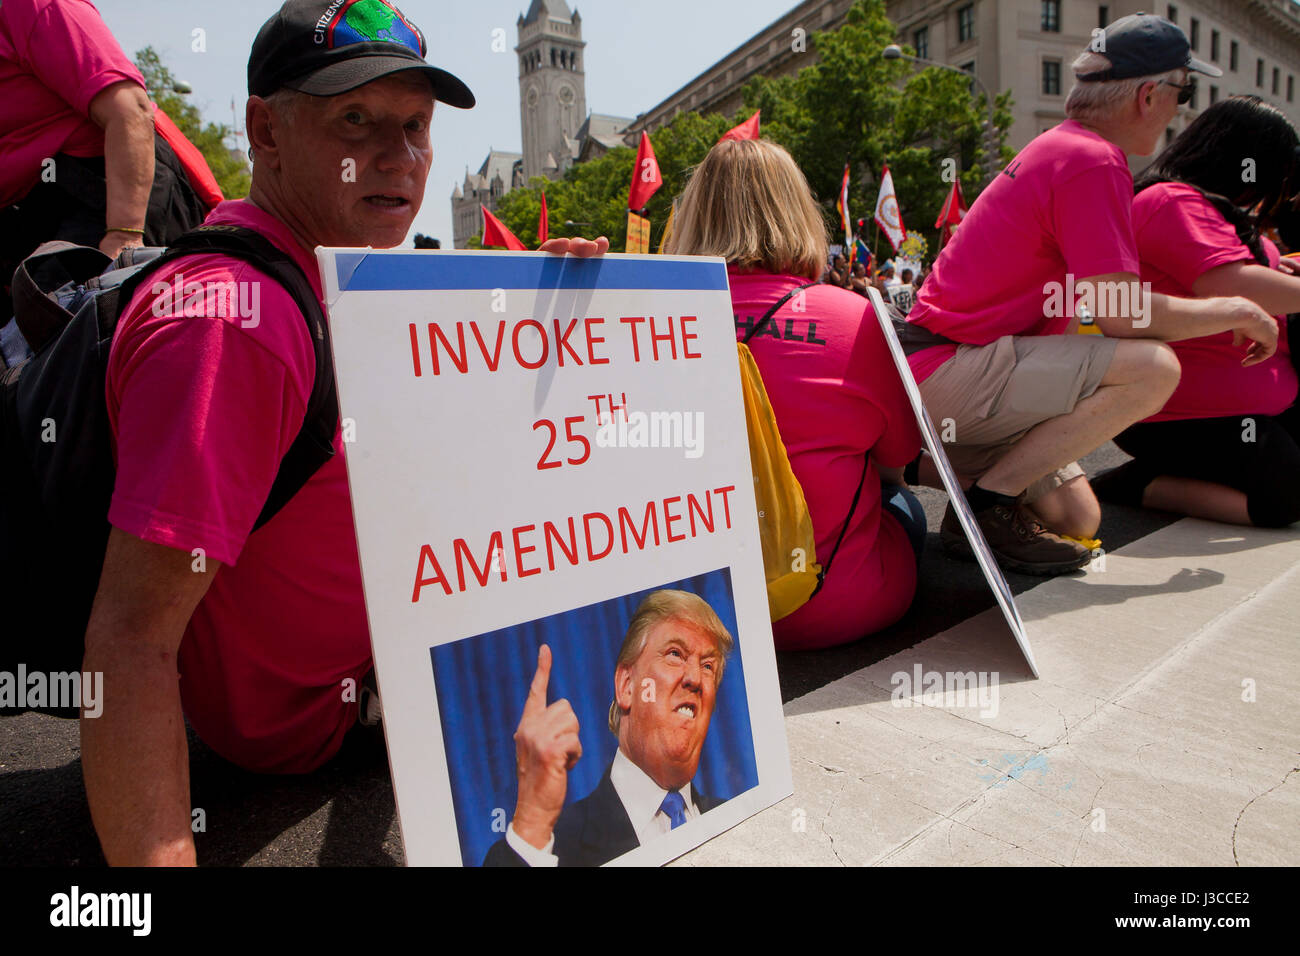 Die 2017 Leute Klima März (Mann mit Zeichen, das lautet: "Rufen Sie die 25. Änderung) - Washington, DC, USA Stockfoto